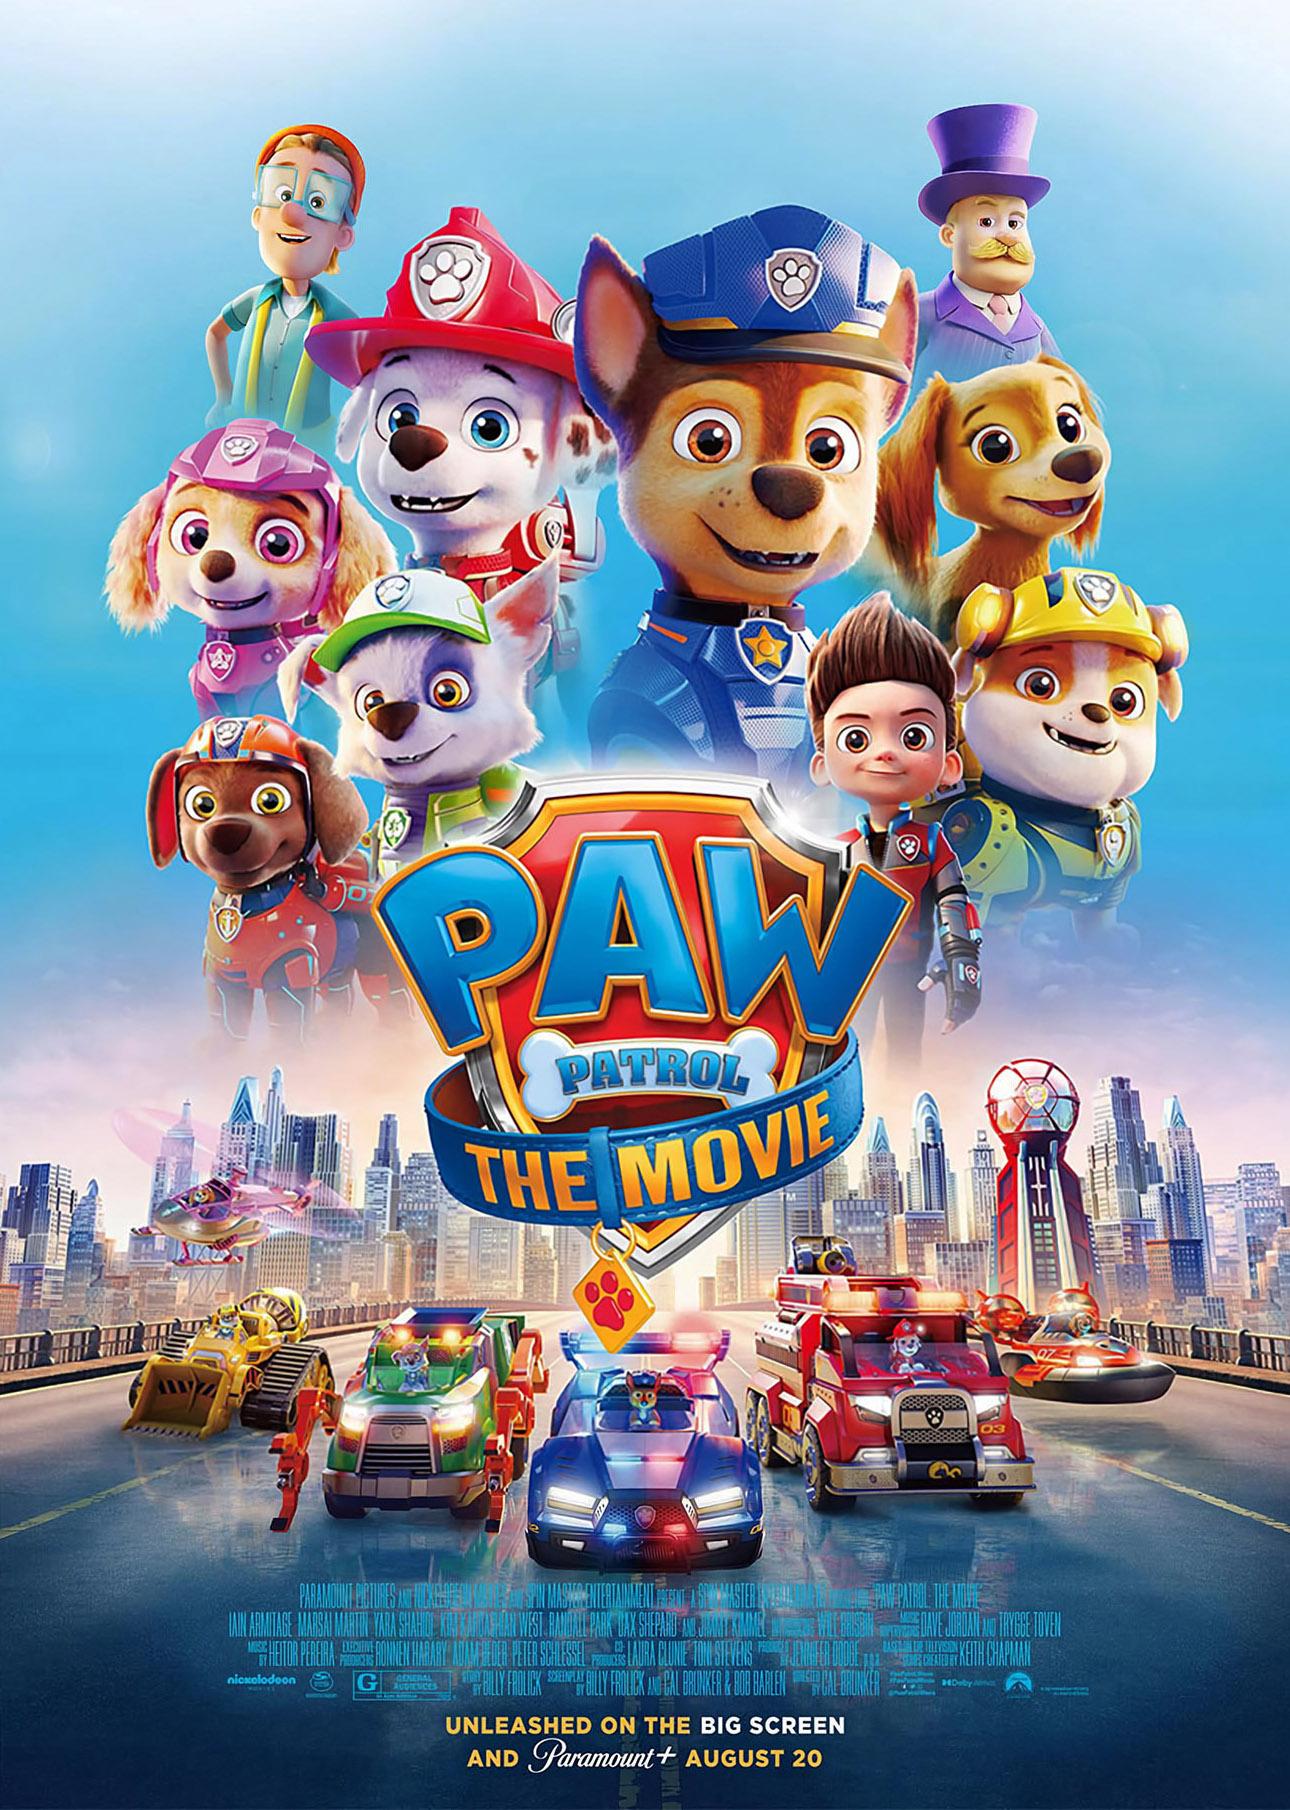 Image of Paw Patrol movie poster